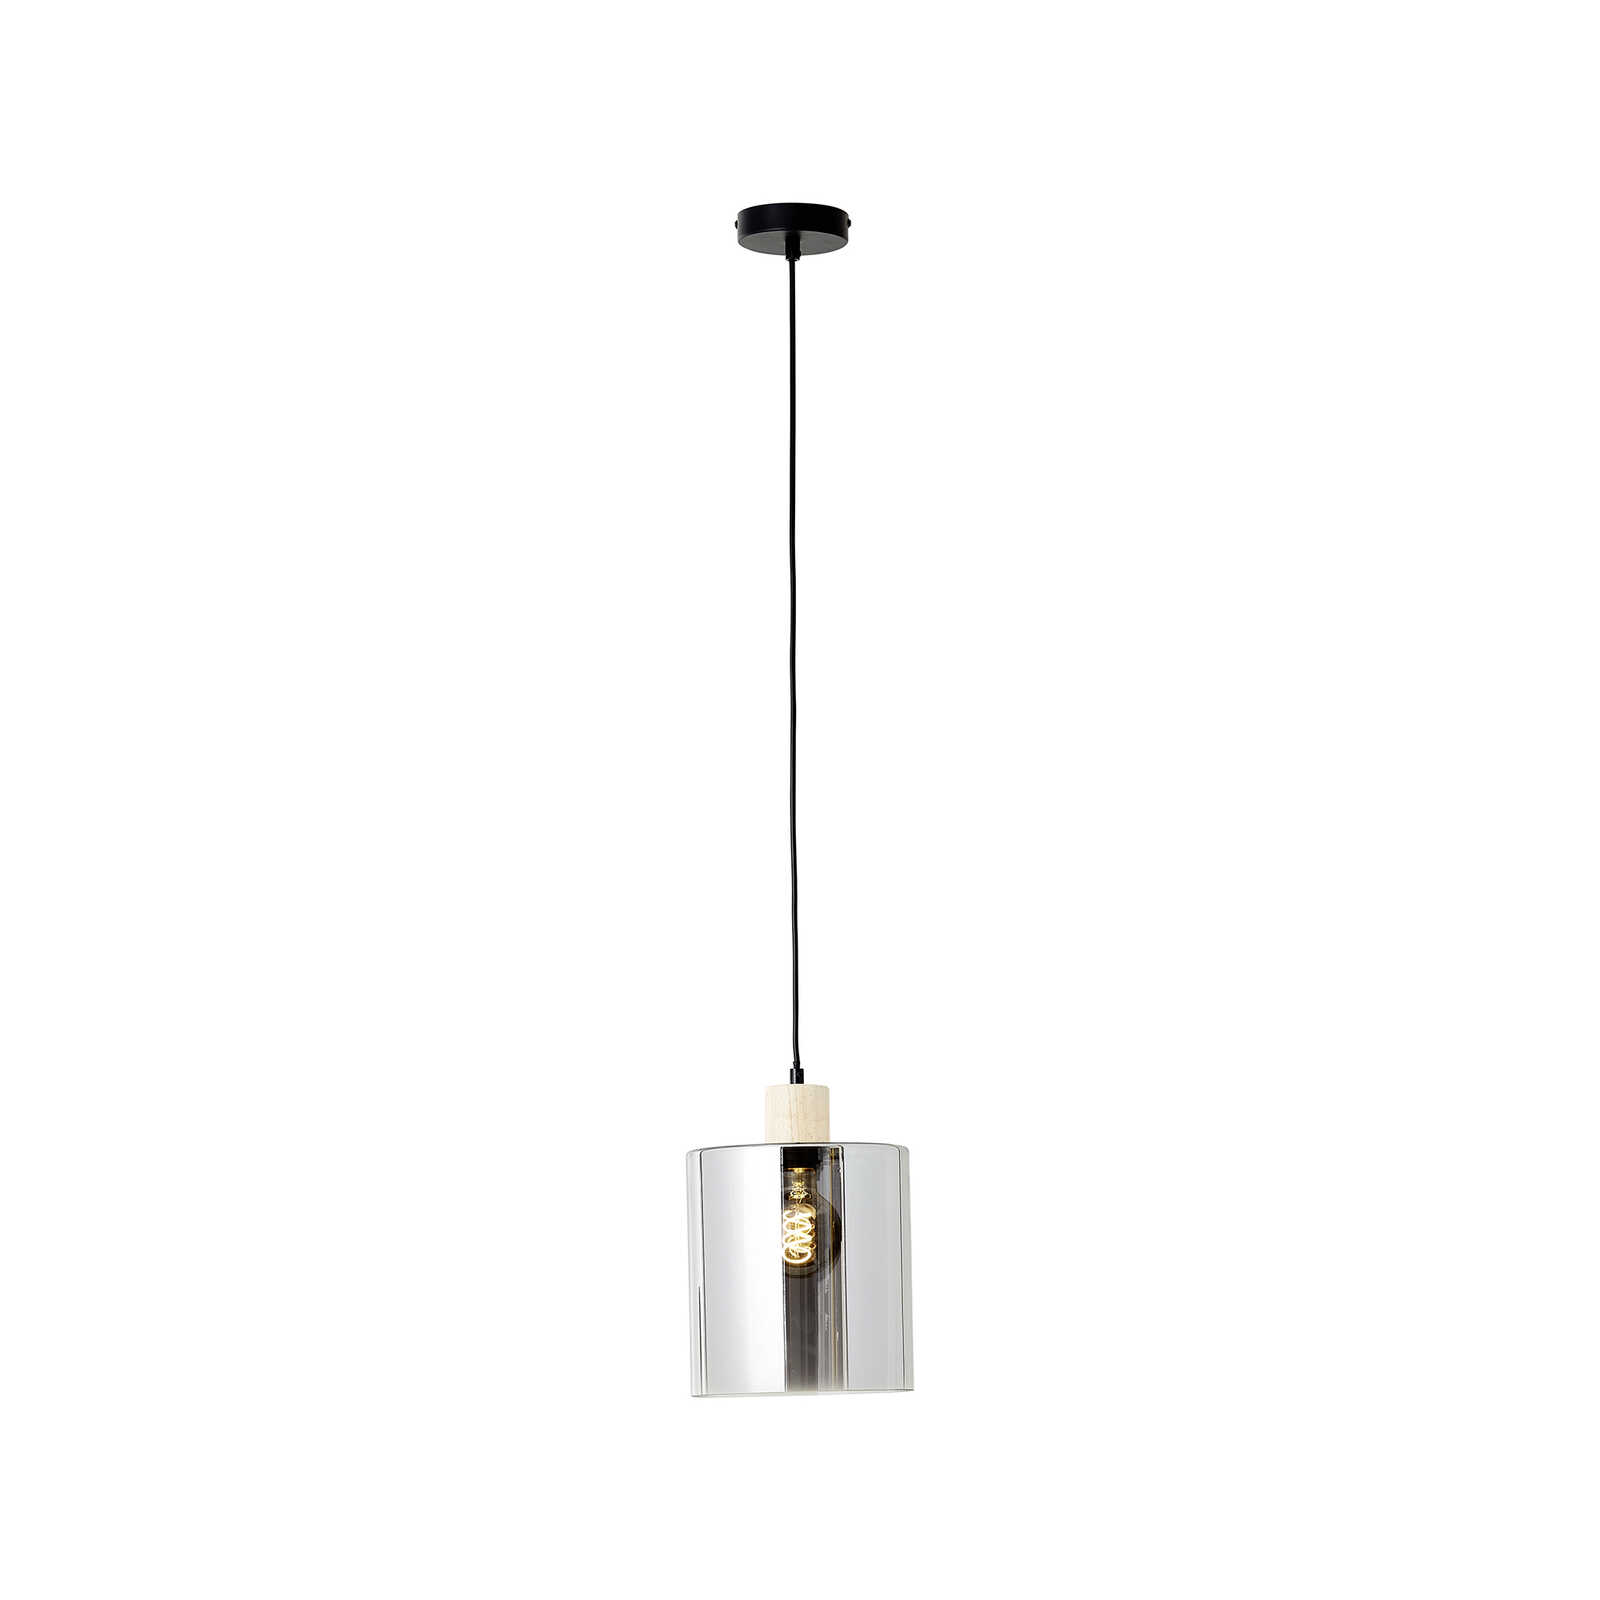 Glazen hanglamp - Tim 1 - Bruin
